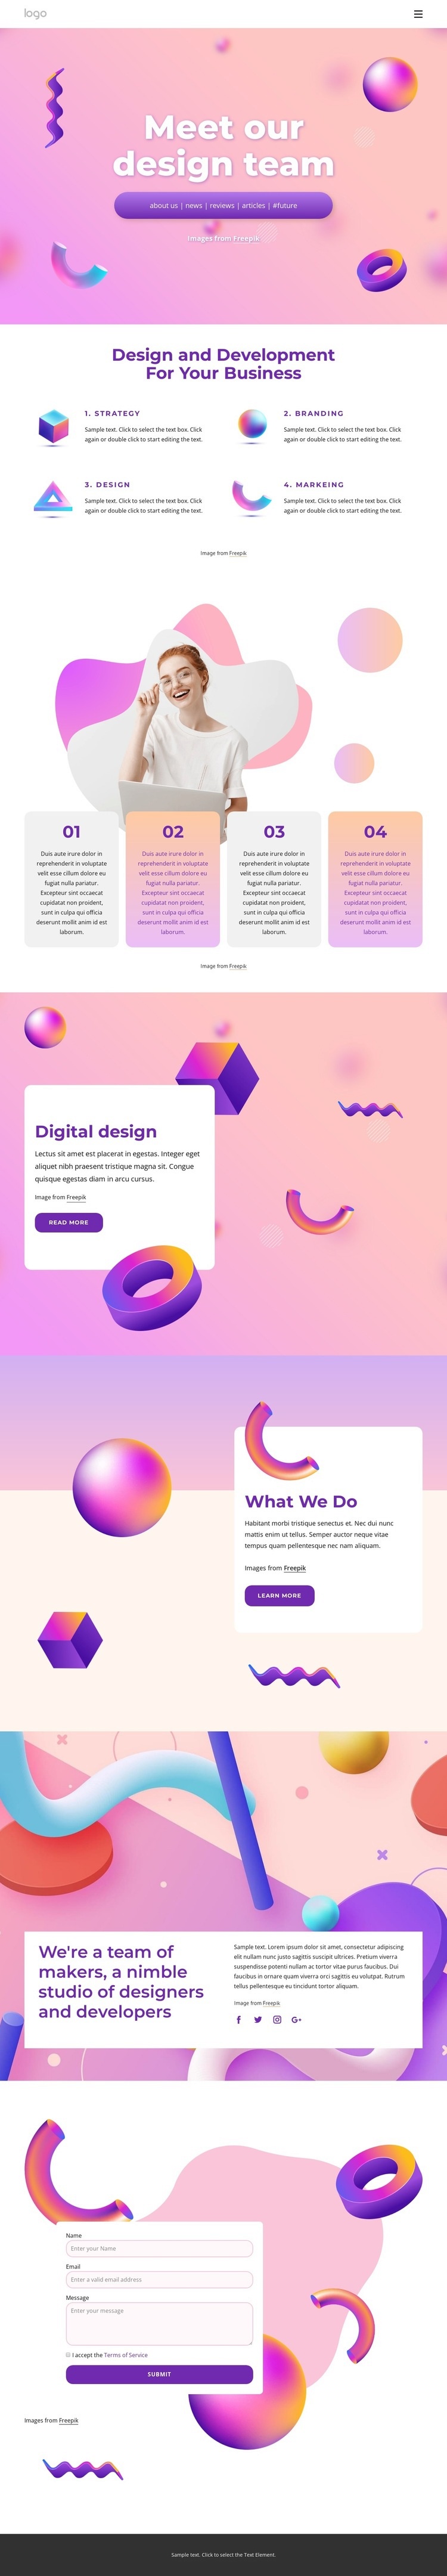 Web design and development company Web Page Design